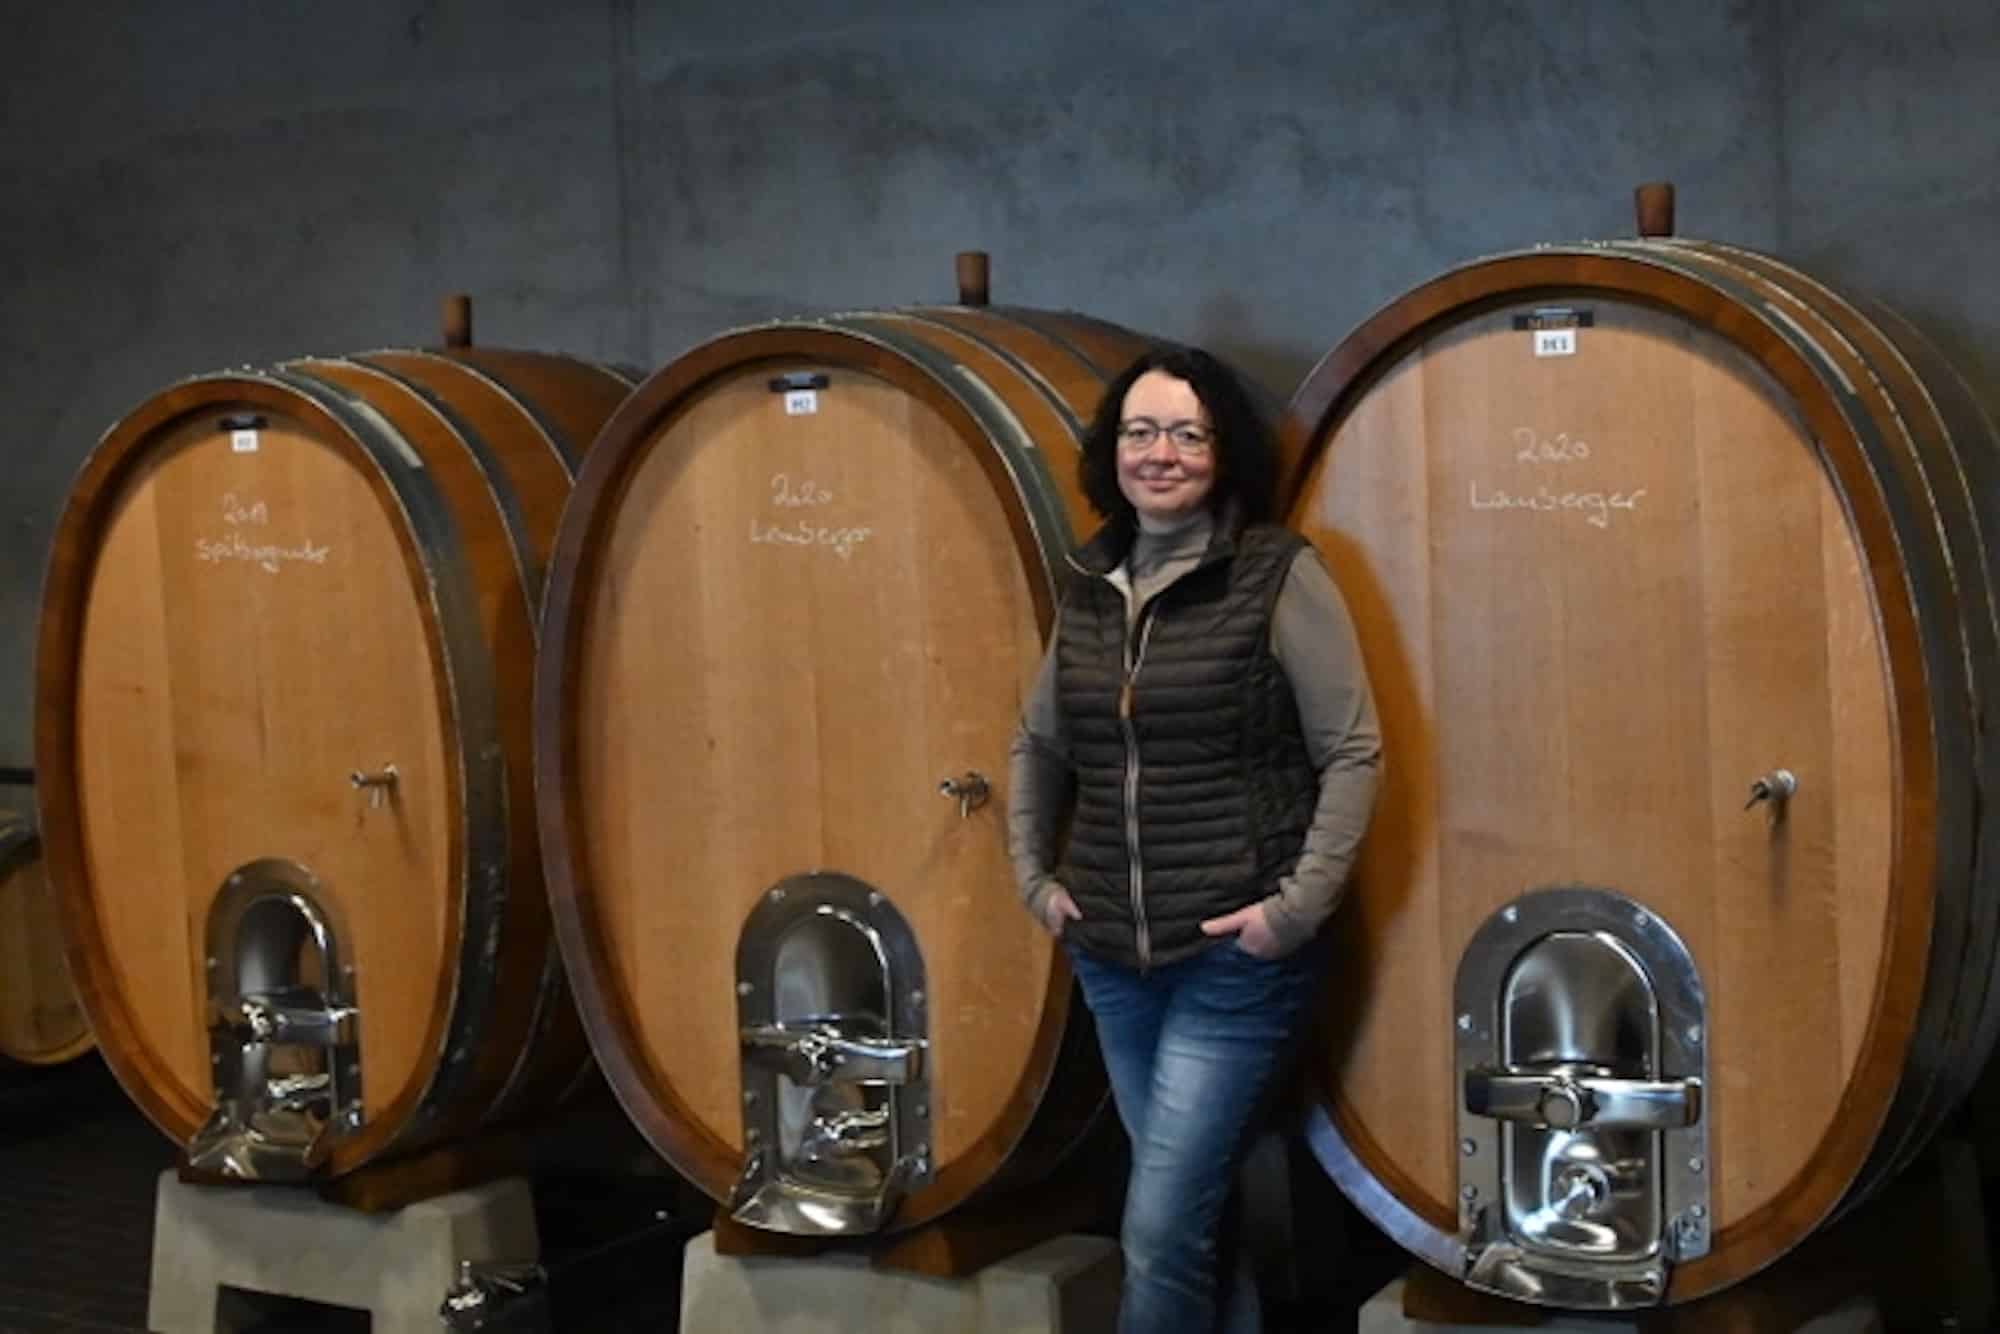 Nina Mayerle vom Weingut Mayerle vor den Weinfässern ihres Weingutes